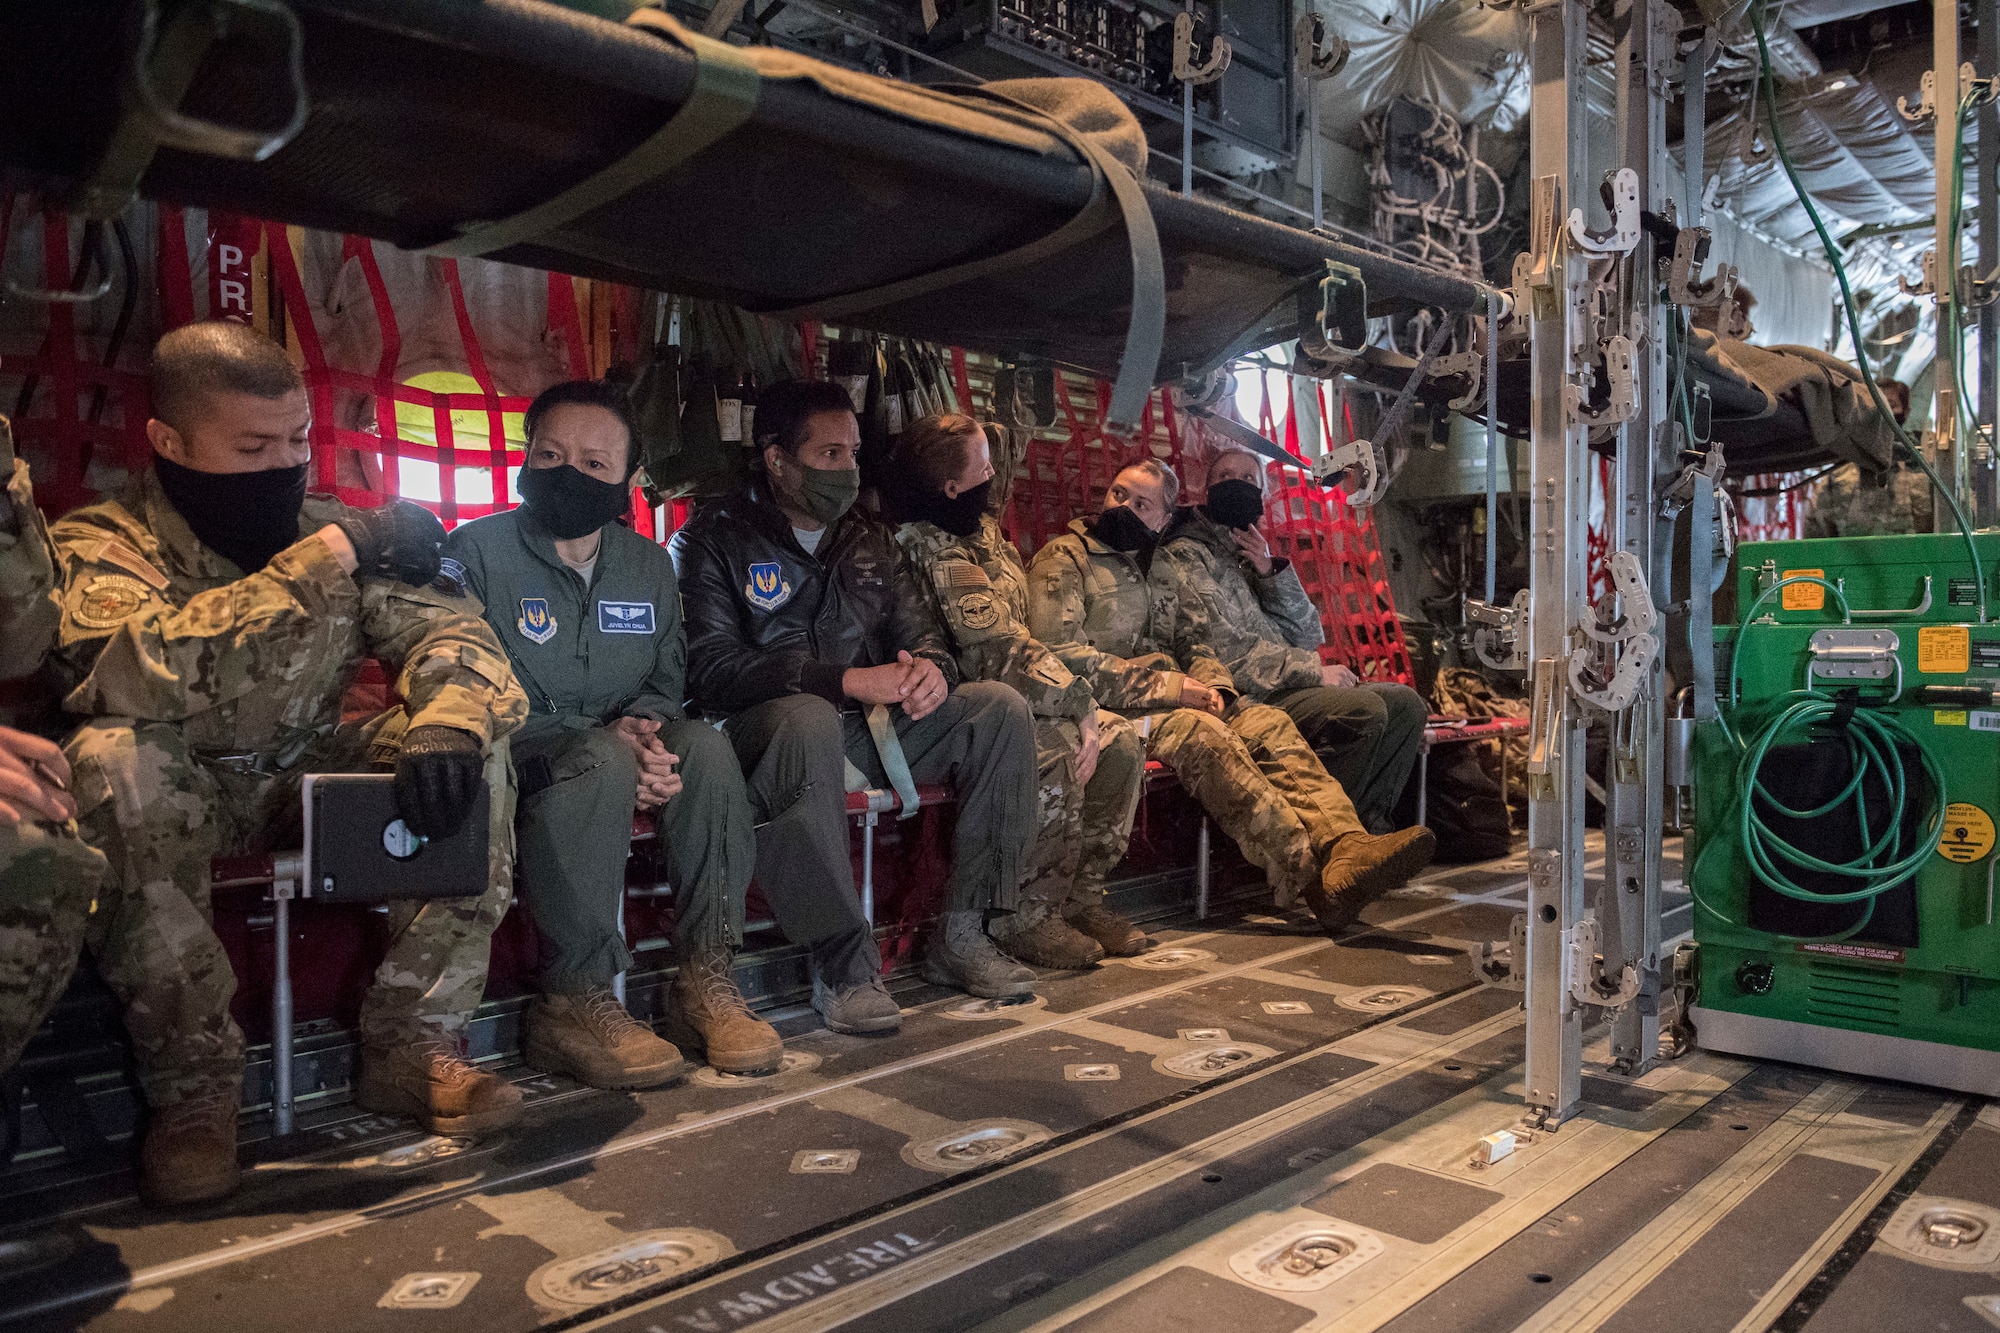 A row of Airmen sit aboard an aircraft.